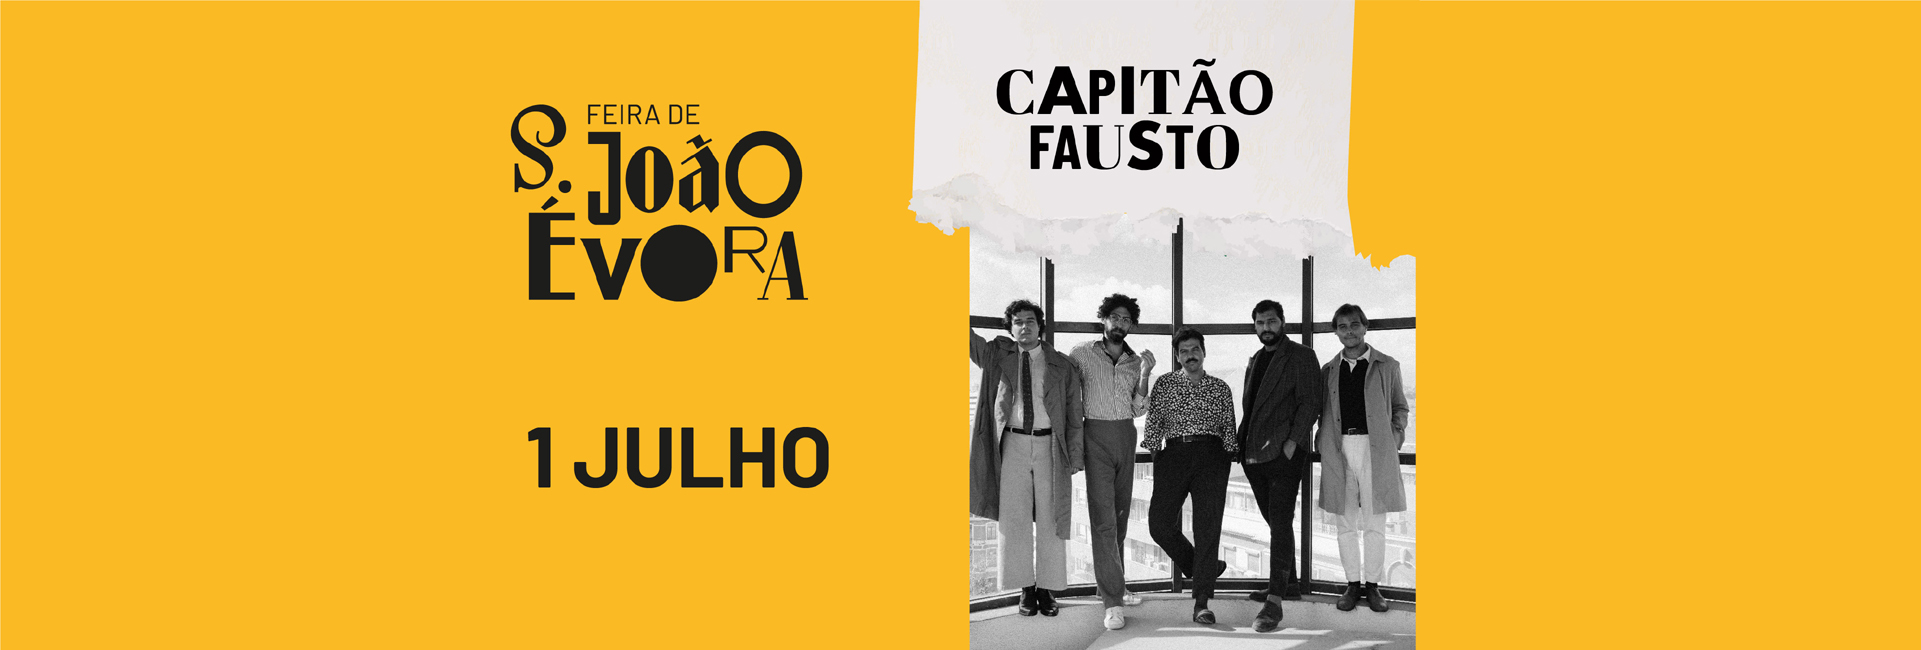 CAPITÃO FAUSTO | Feira de S. João 2022